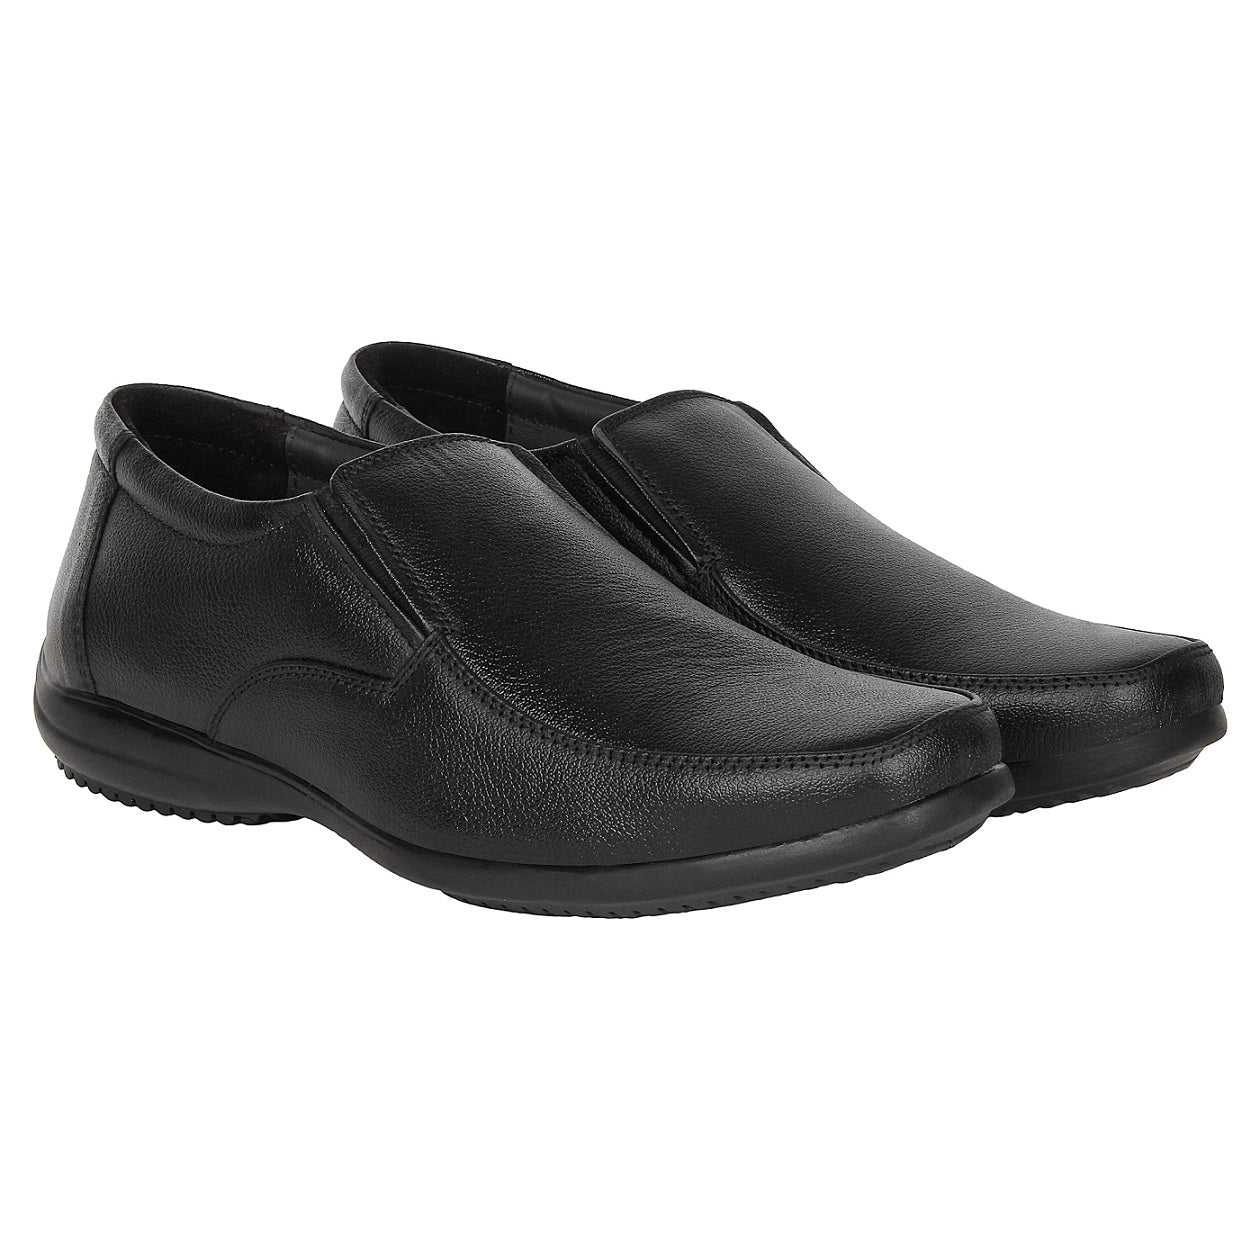 SeeandWear Leather Formal Shoes For Men - SeeandWear